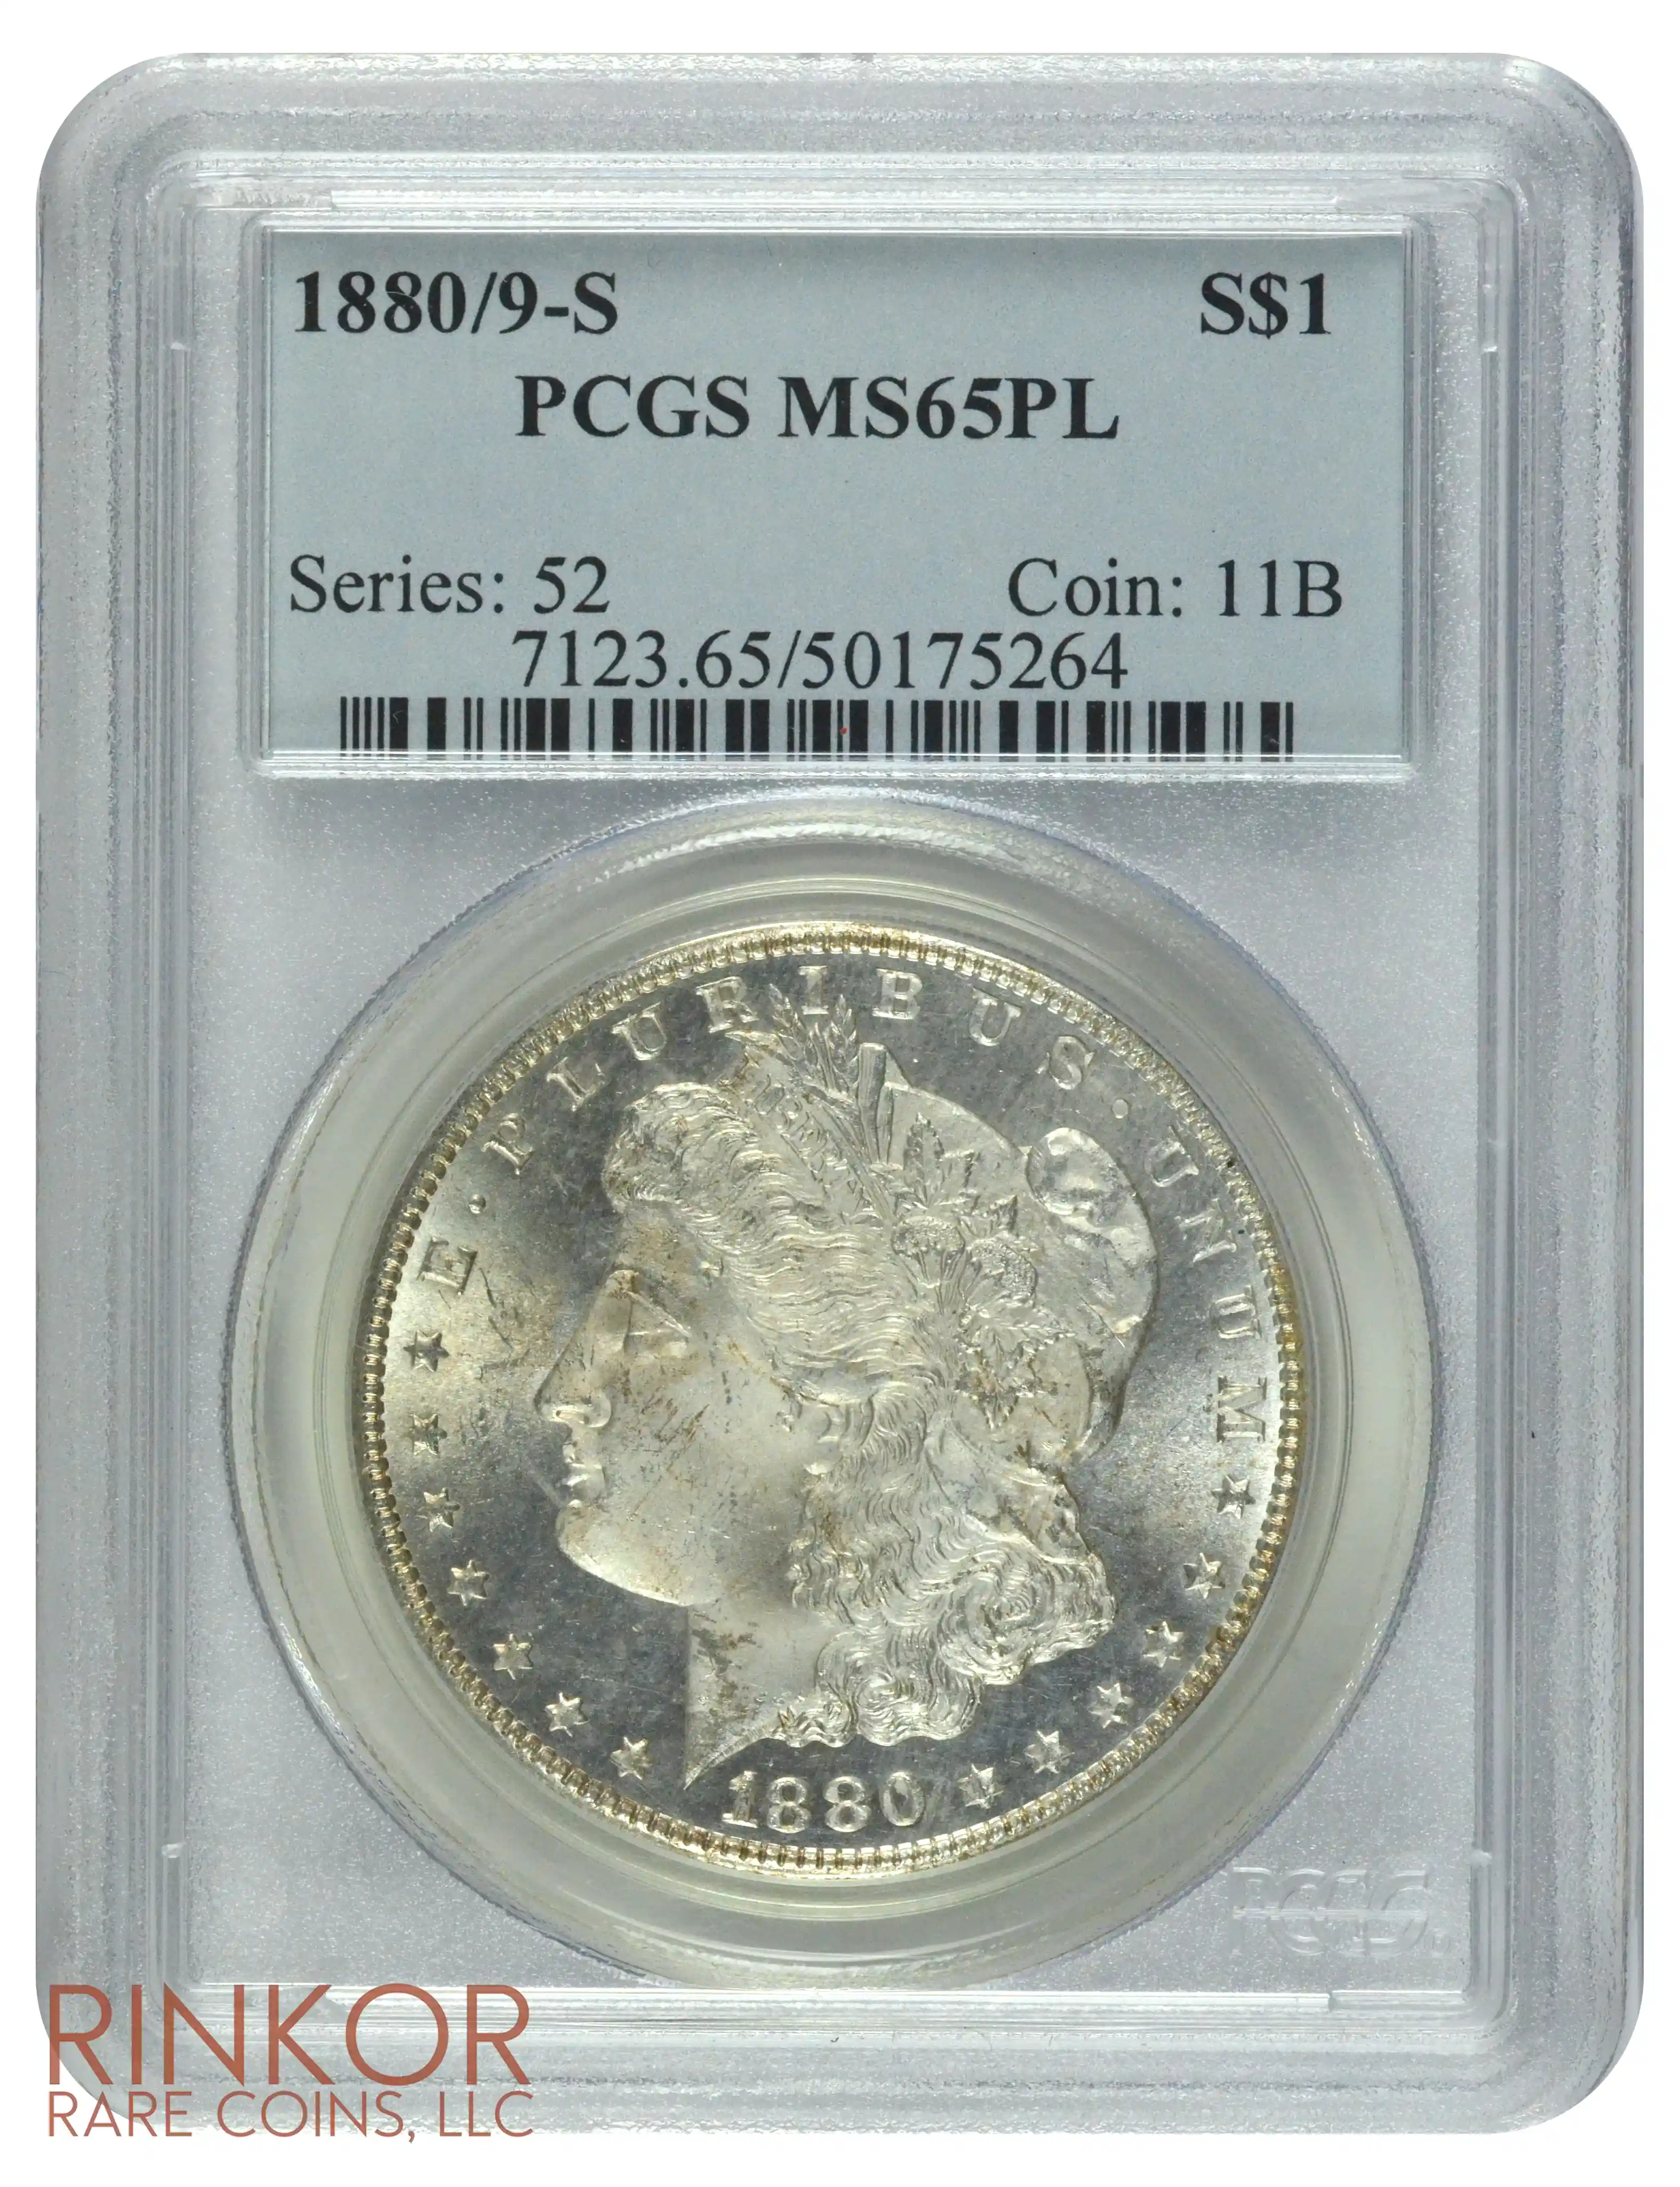 1880/9-S $1 PCGS MS 65 PL